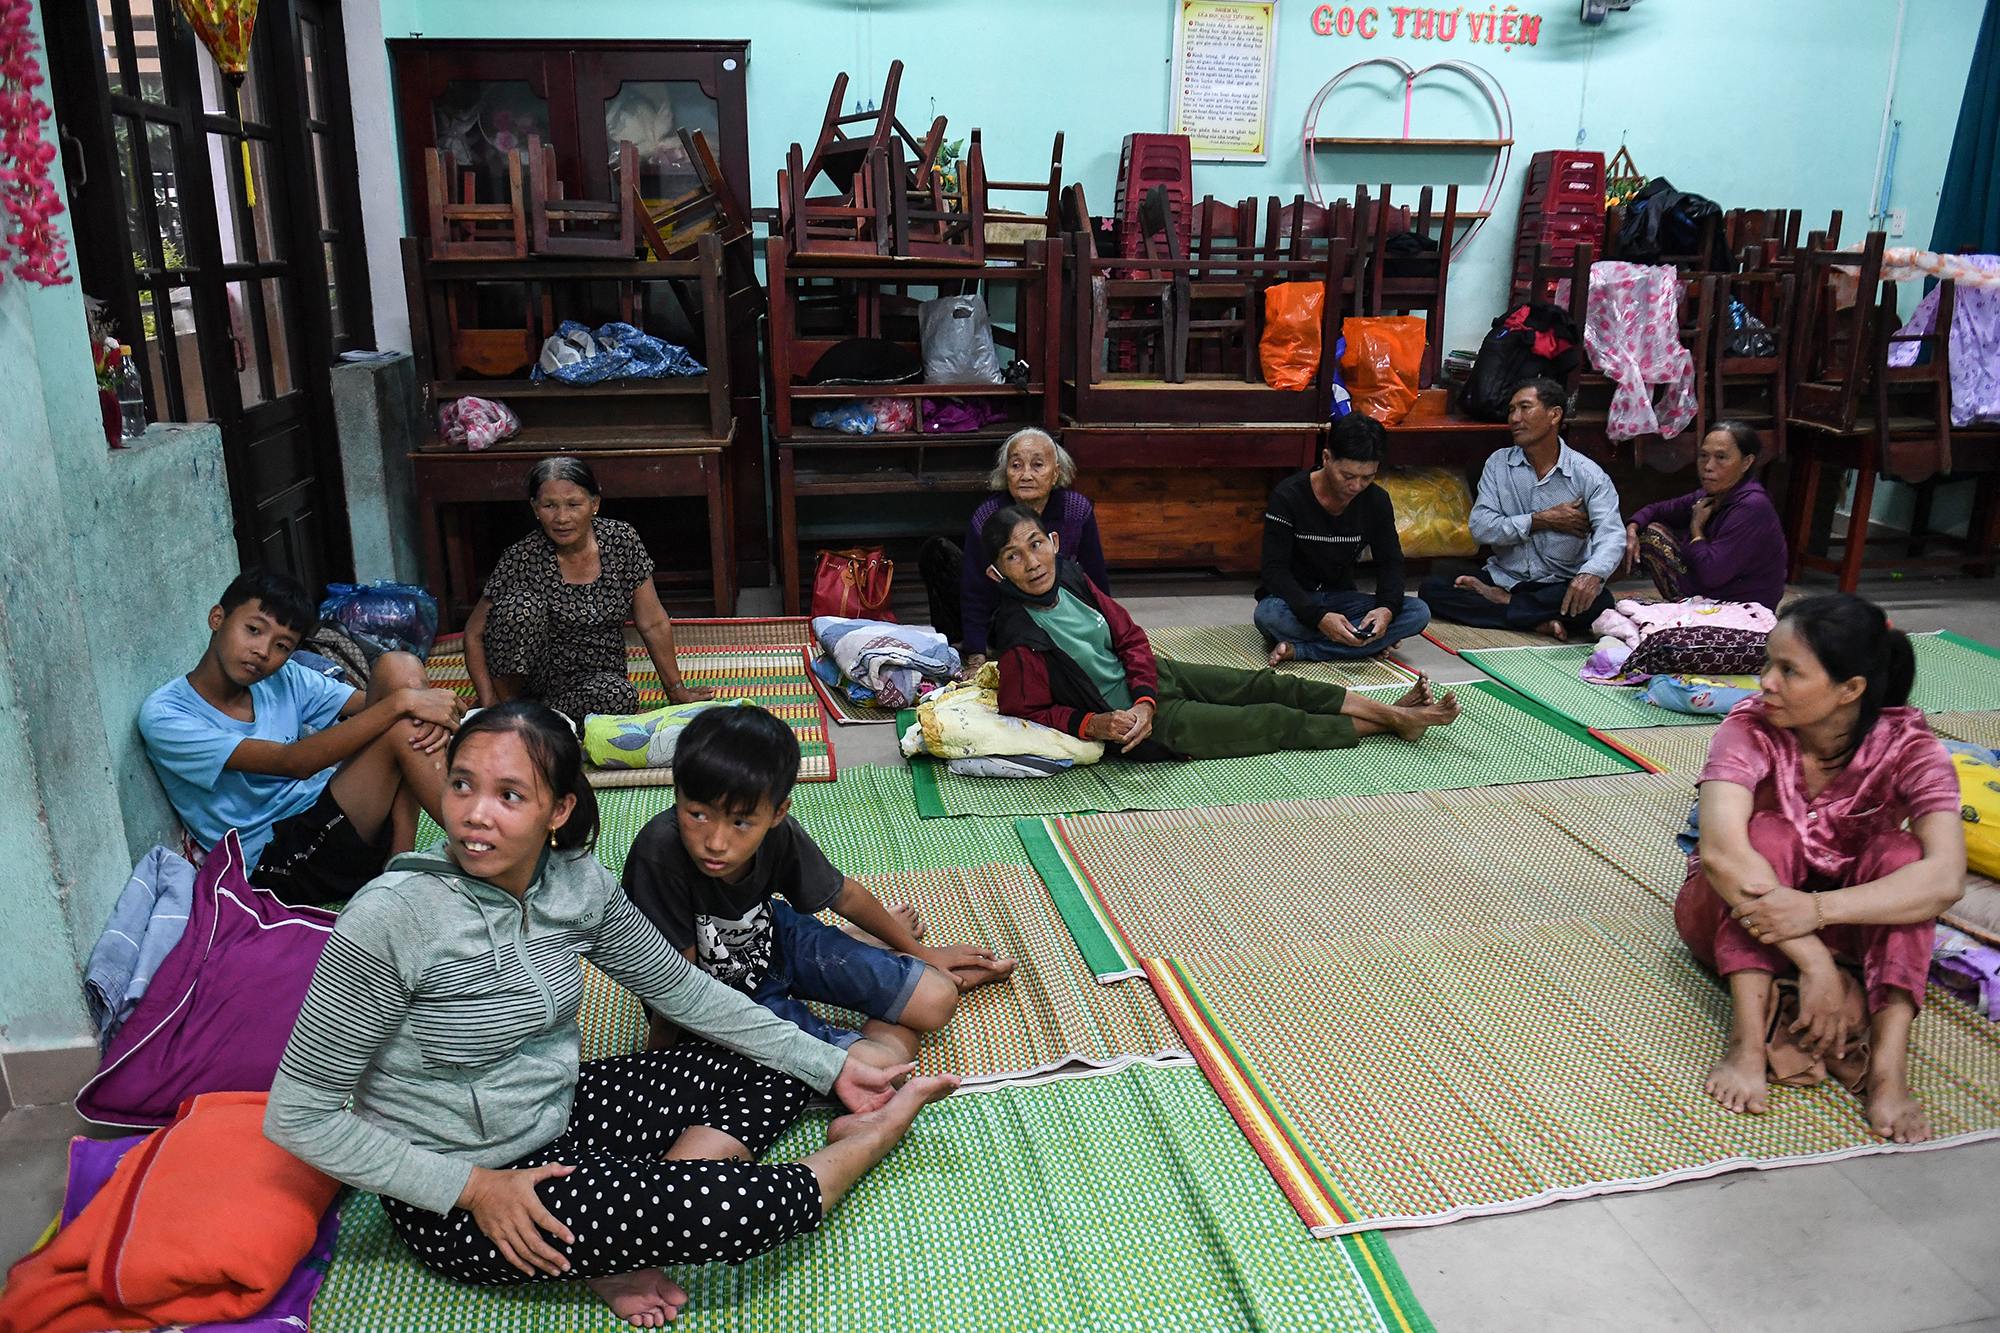 In Vietnam birngen sich die Menschen vor dem Taifun "Noru" in Sicherheit